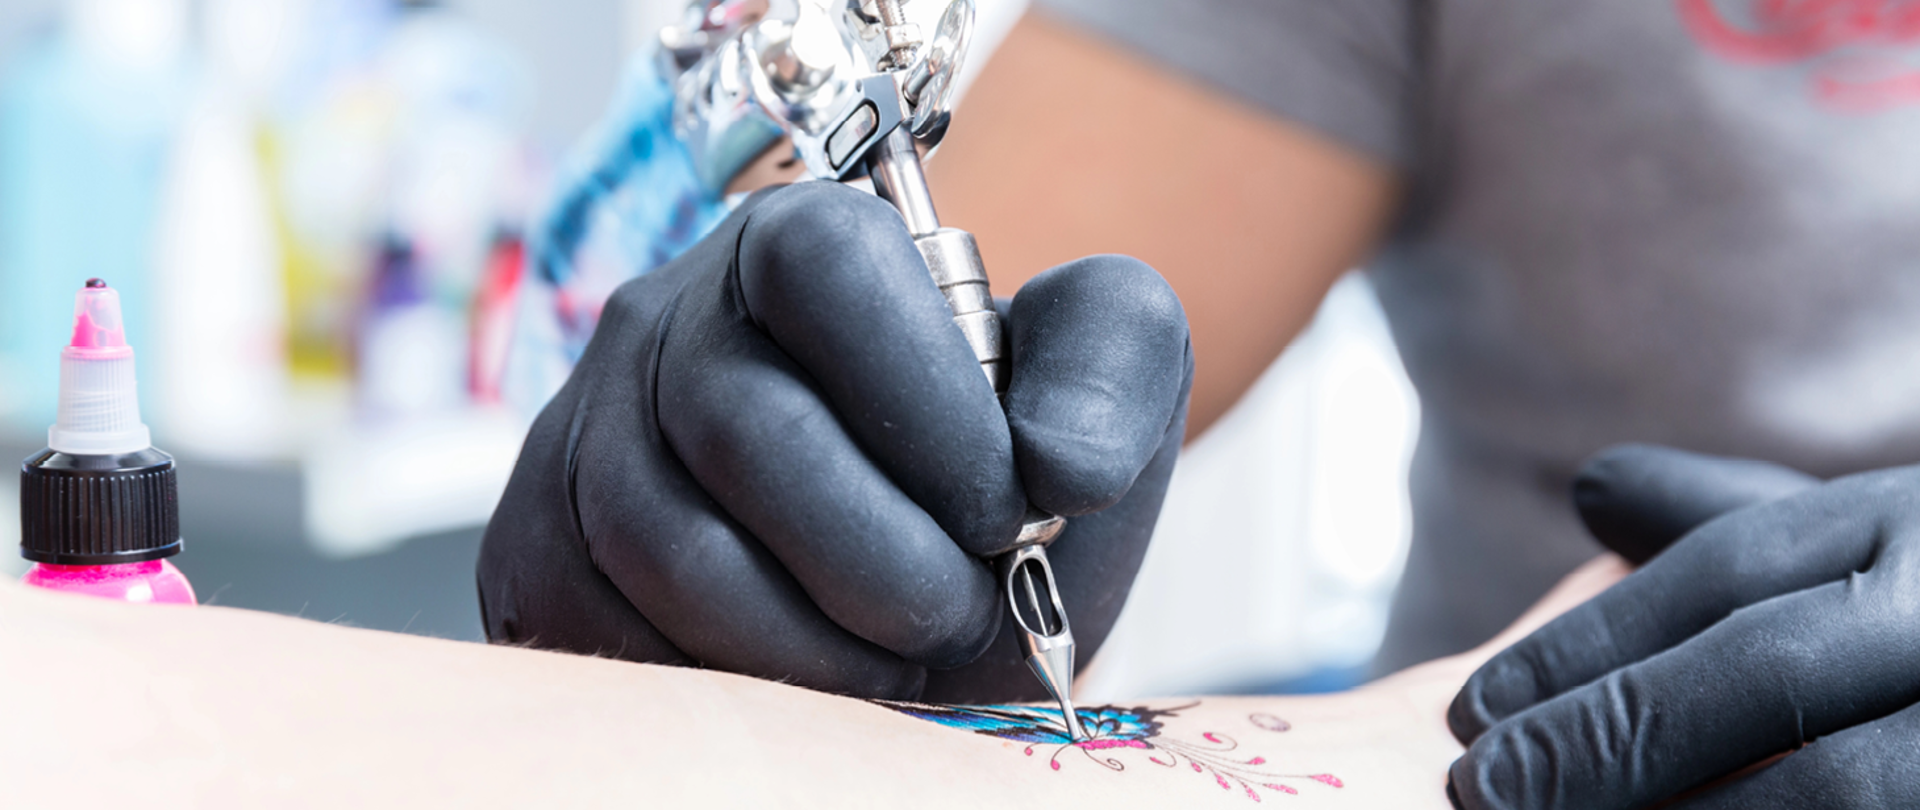 Planujesz wykonać tatuaż Upewnij się czy stosowany tusz jest bezpieczny